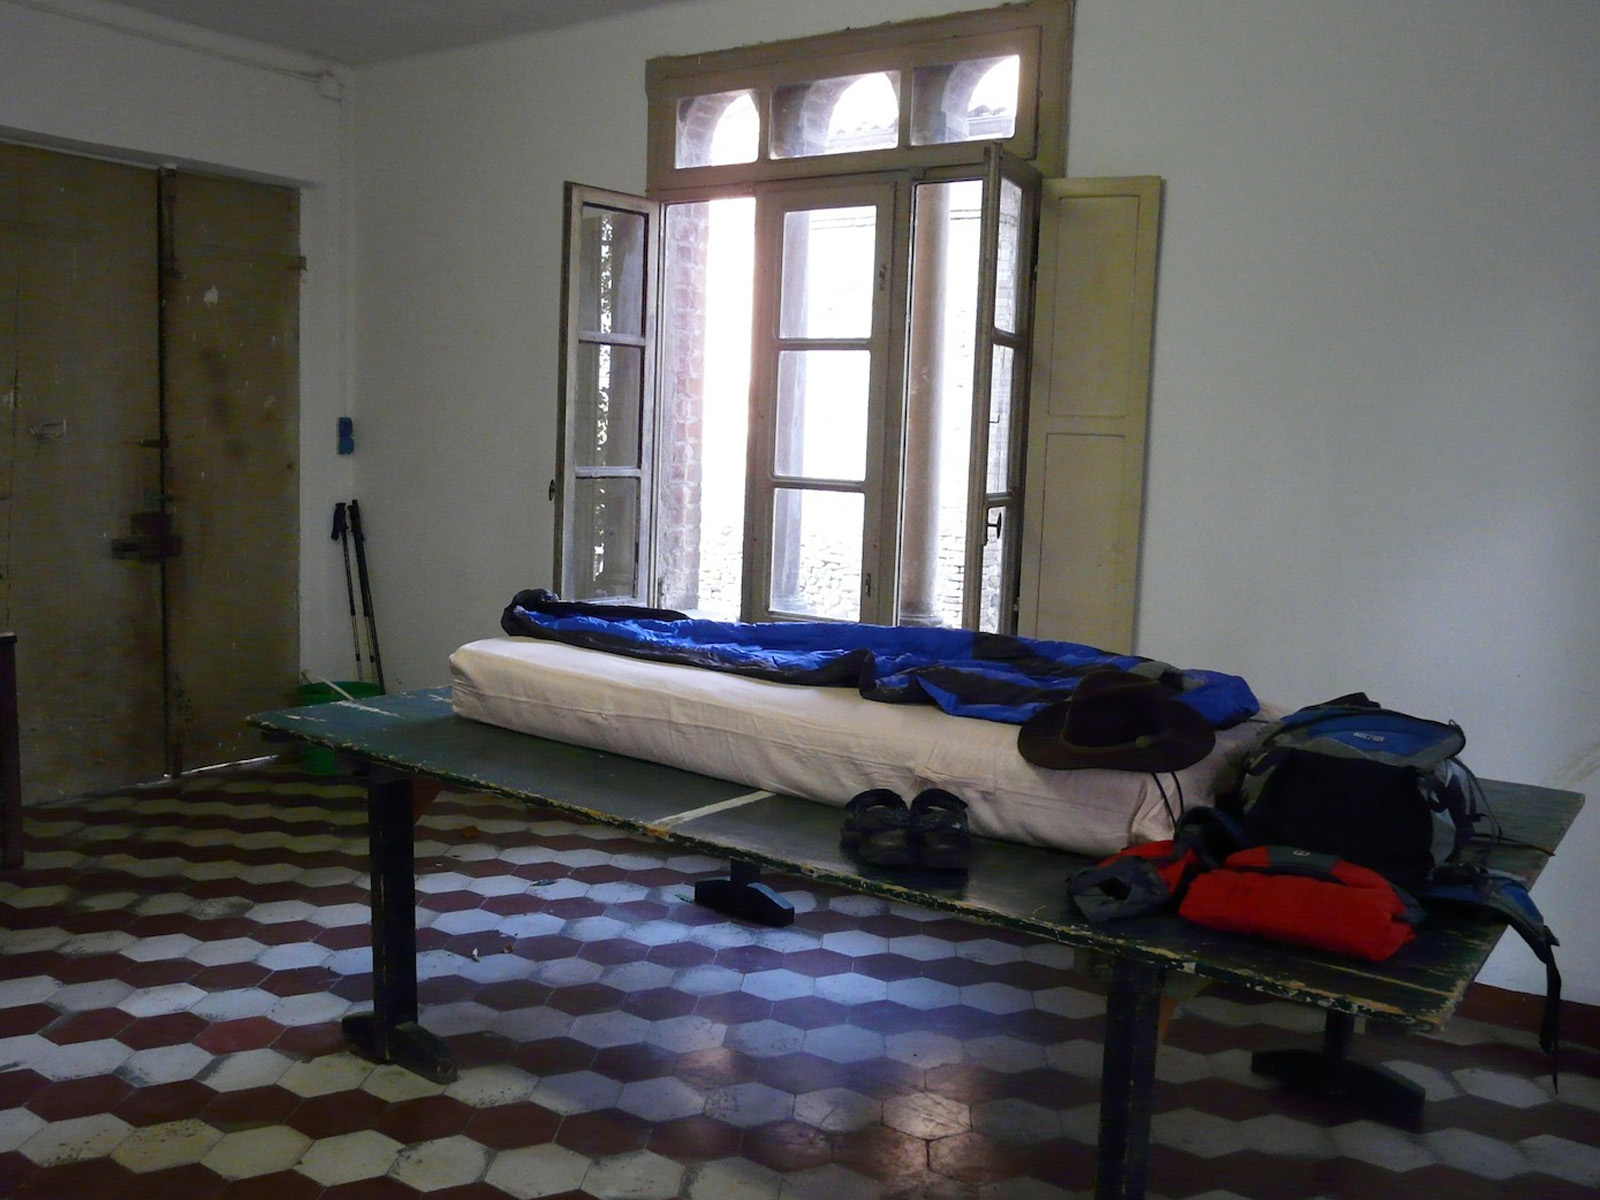  Eine Tischtennisplatte als Schlafstätte im Herbst bot ihm der Pfarrer in Costamezzana, nachdem die Pilger-Herberge bereits geschlossen hatte 